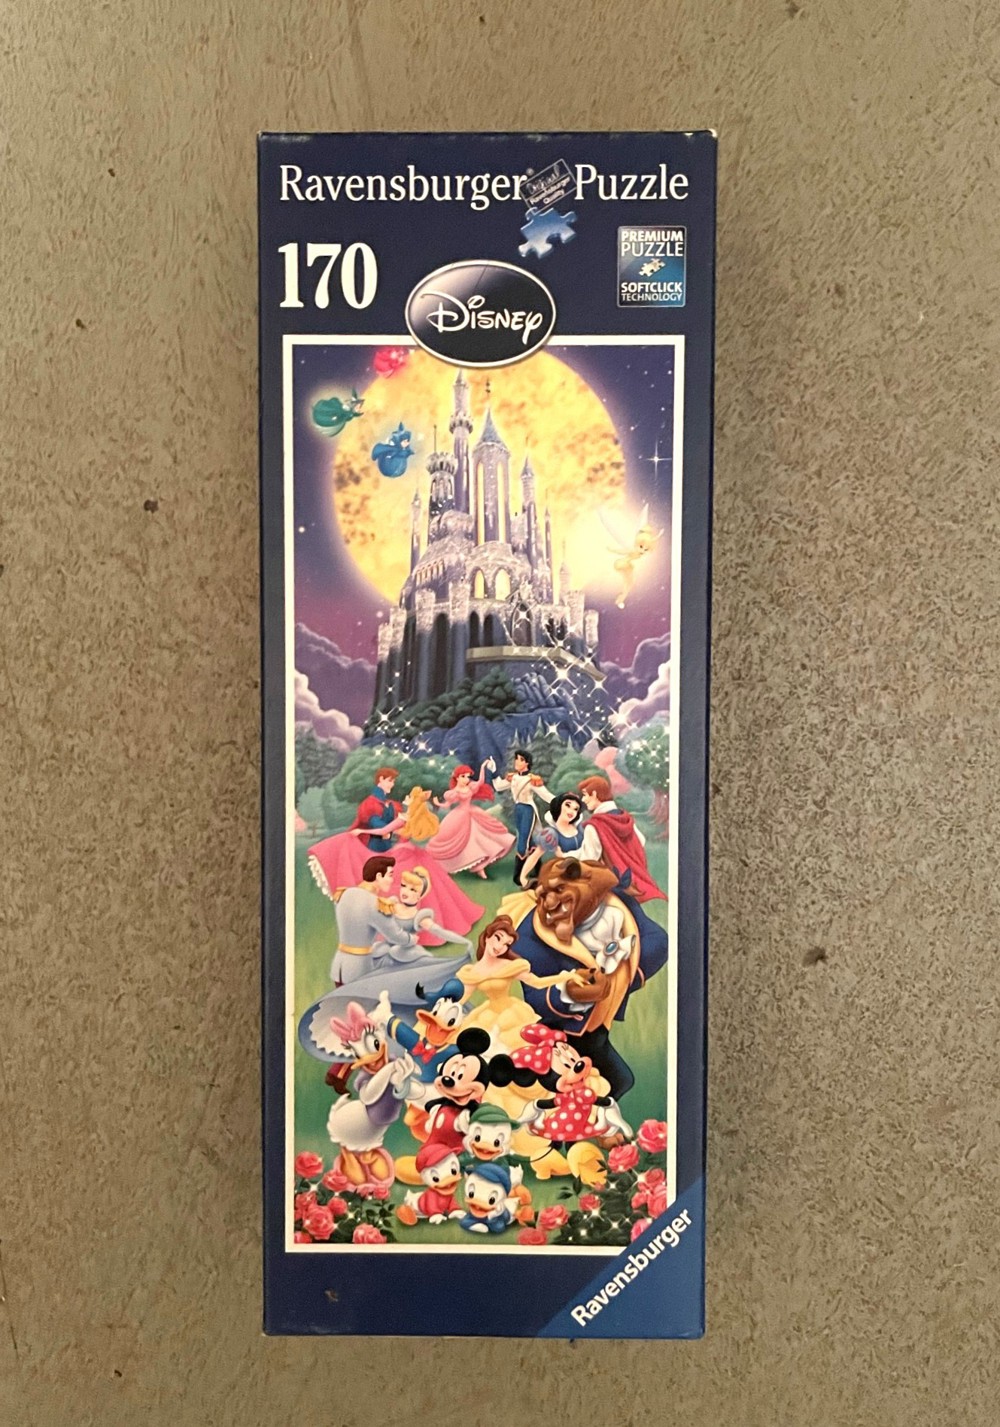 schönes Puzzle von Ravensburger, 170 Teile, Disney